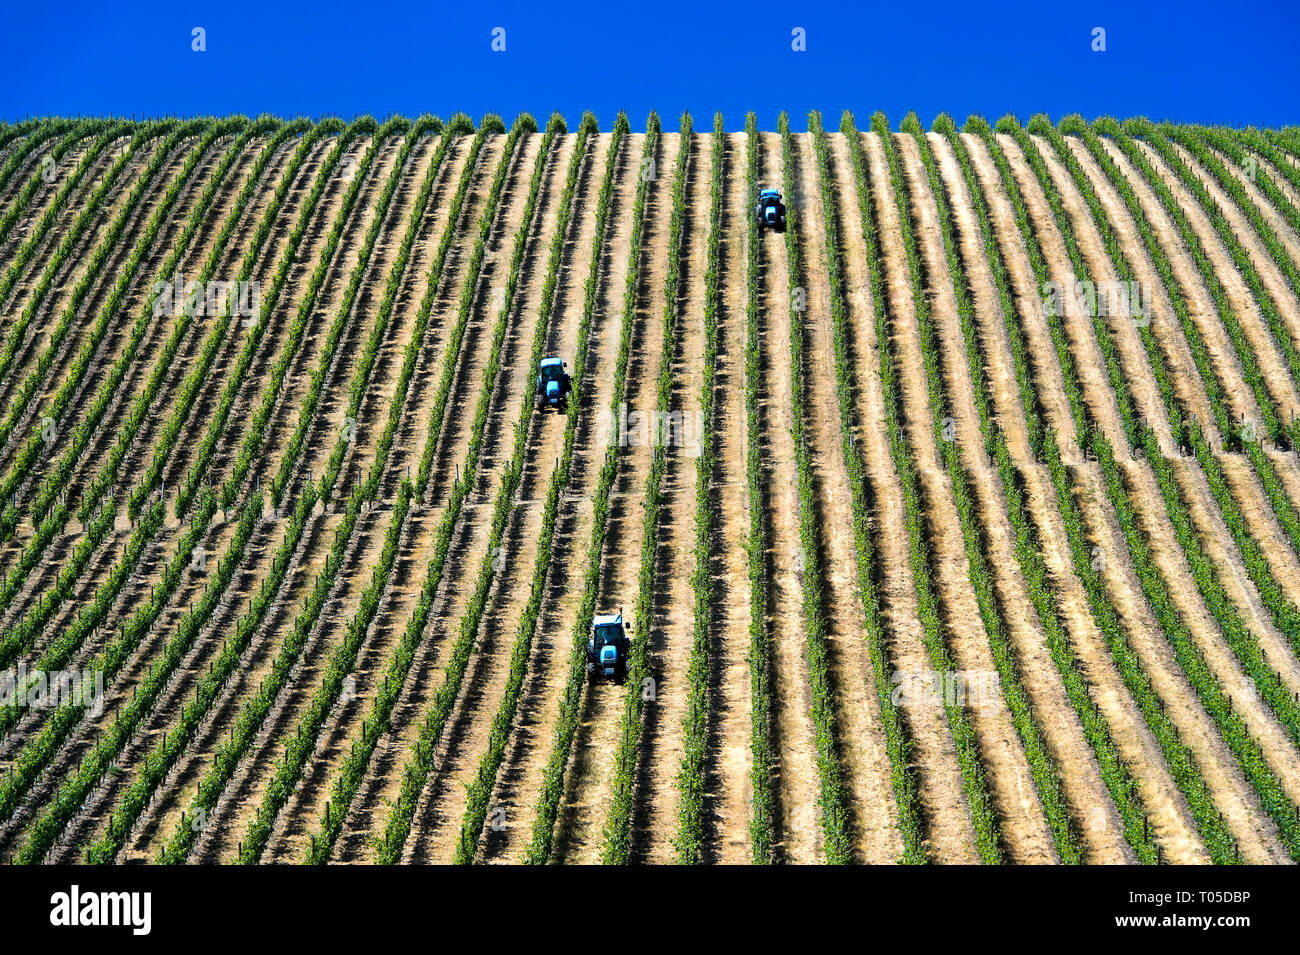 Terrain mécanisés avec tracteur en vignes avec vignes verticale, Vinha ao alto technique, Sao Joao de Pesqueira, Vallée du Douro, Portugal Banque D'Images